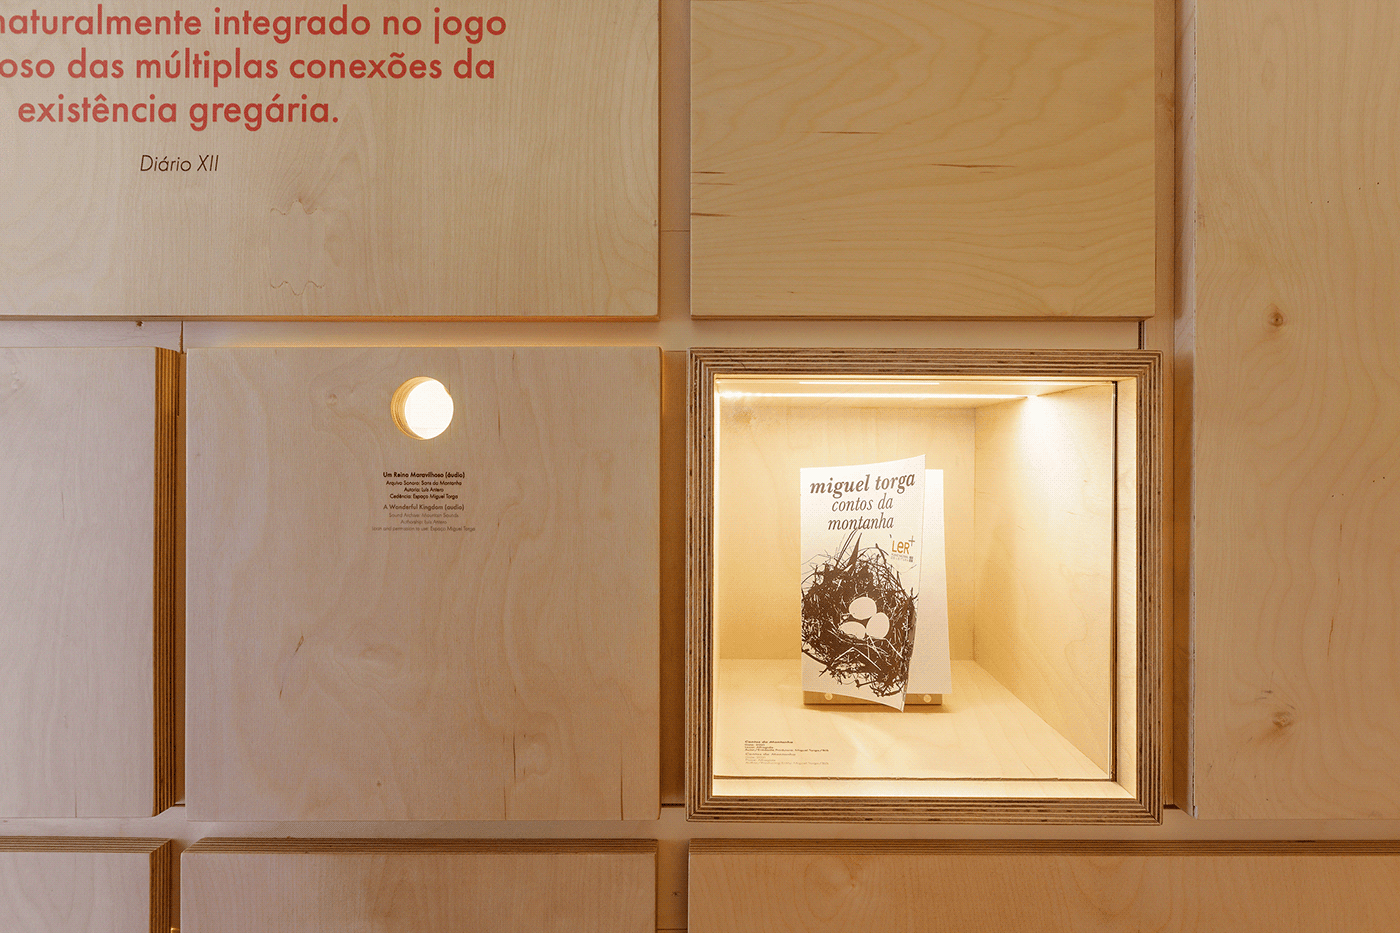 museum Museu spacial design Exhibition  typography   literature design history Portugal Miguel Torga